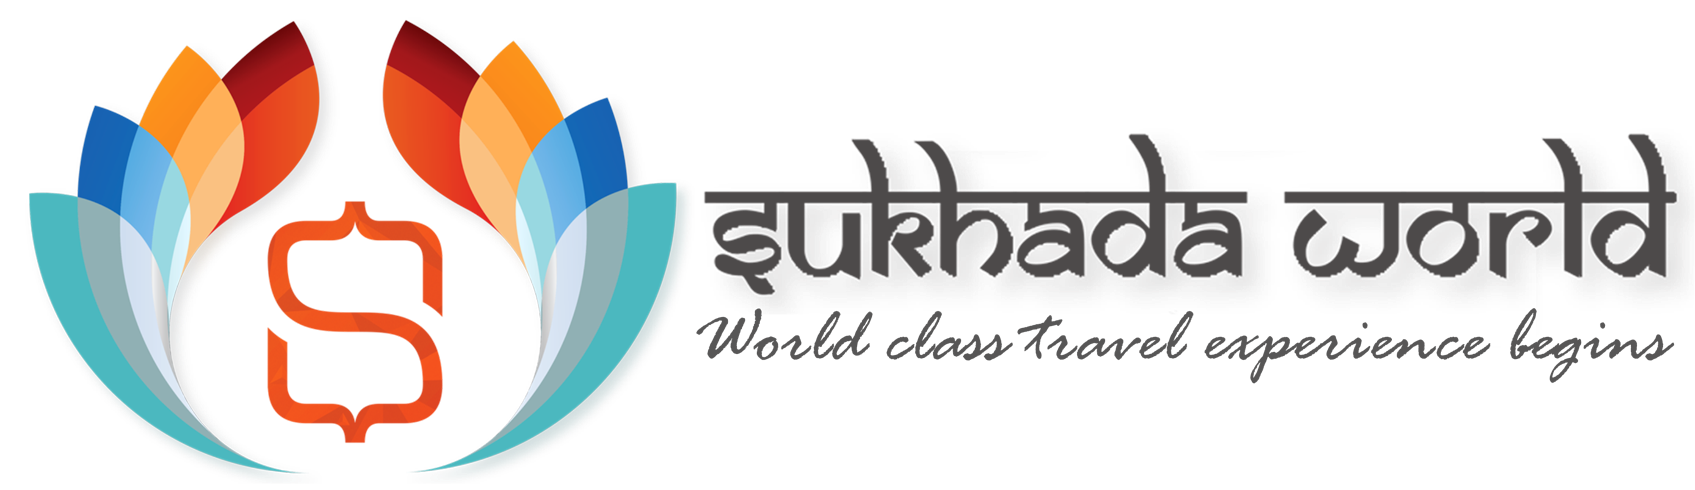 Sukhada world logo